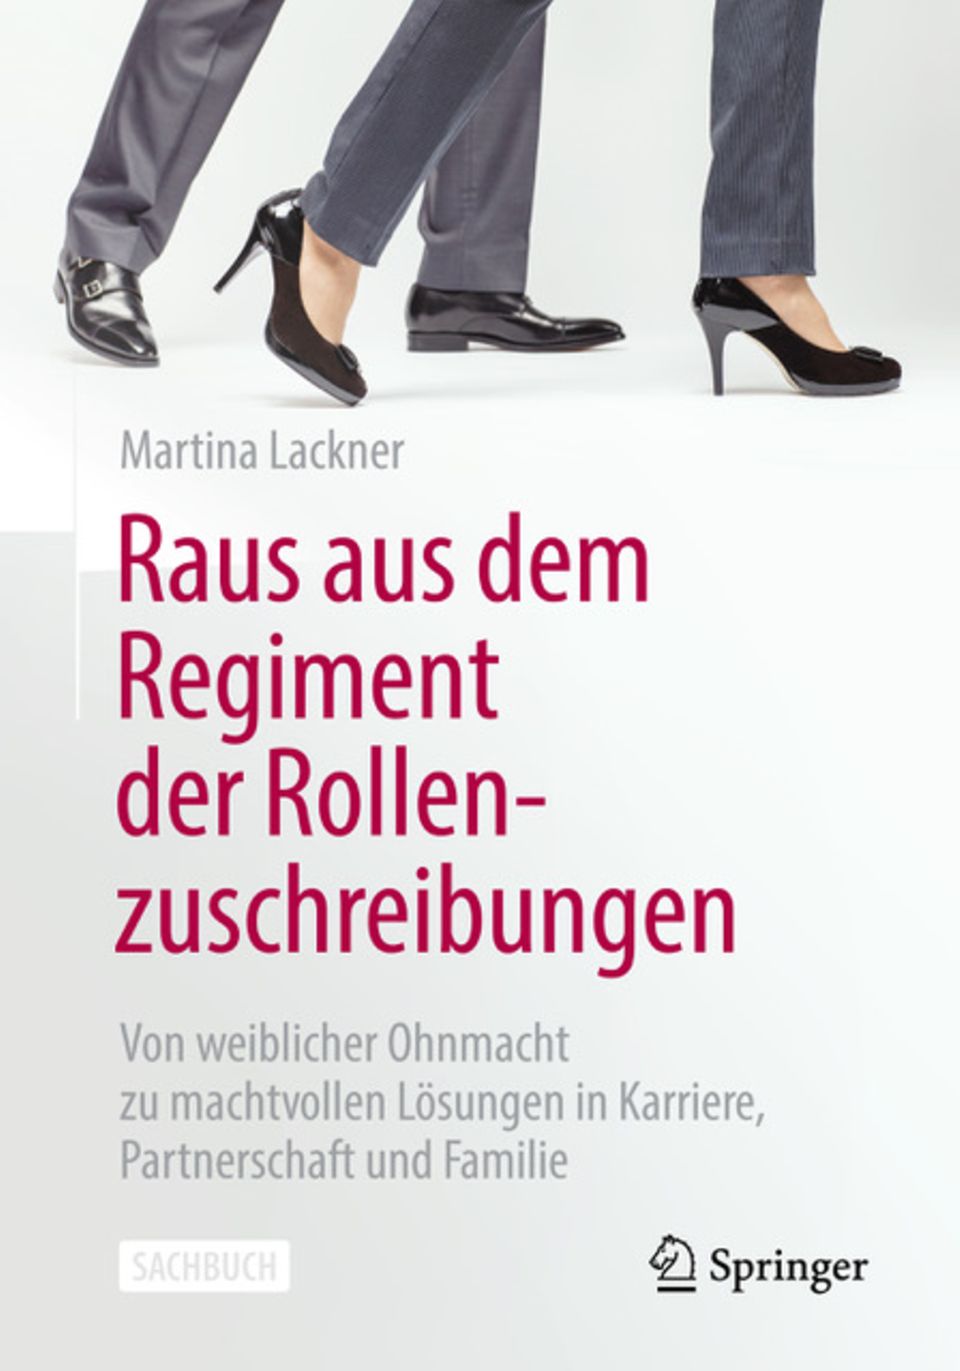 Martina Lackner: „Raus aus dem Regiment der Rollenzuschreibungen“, Springer, 2023. 